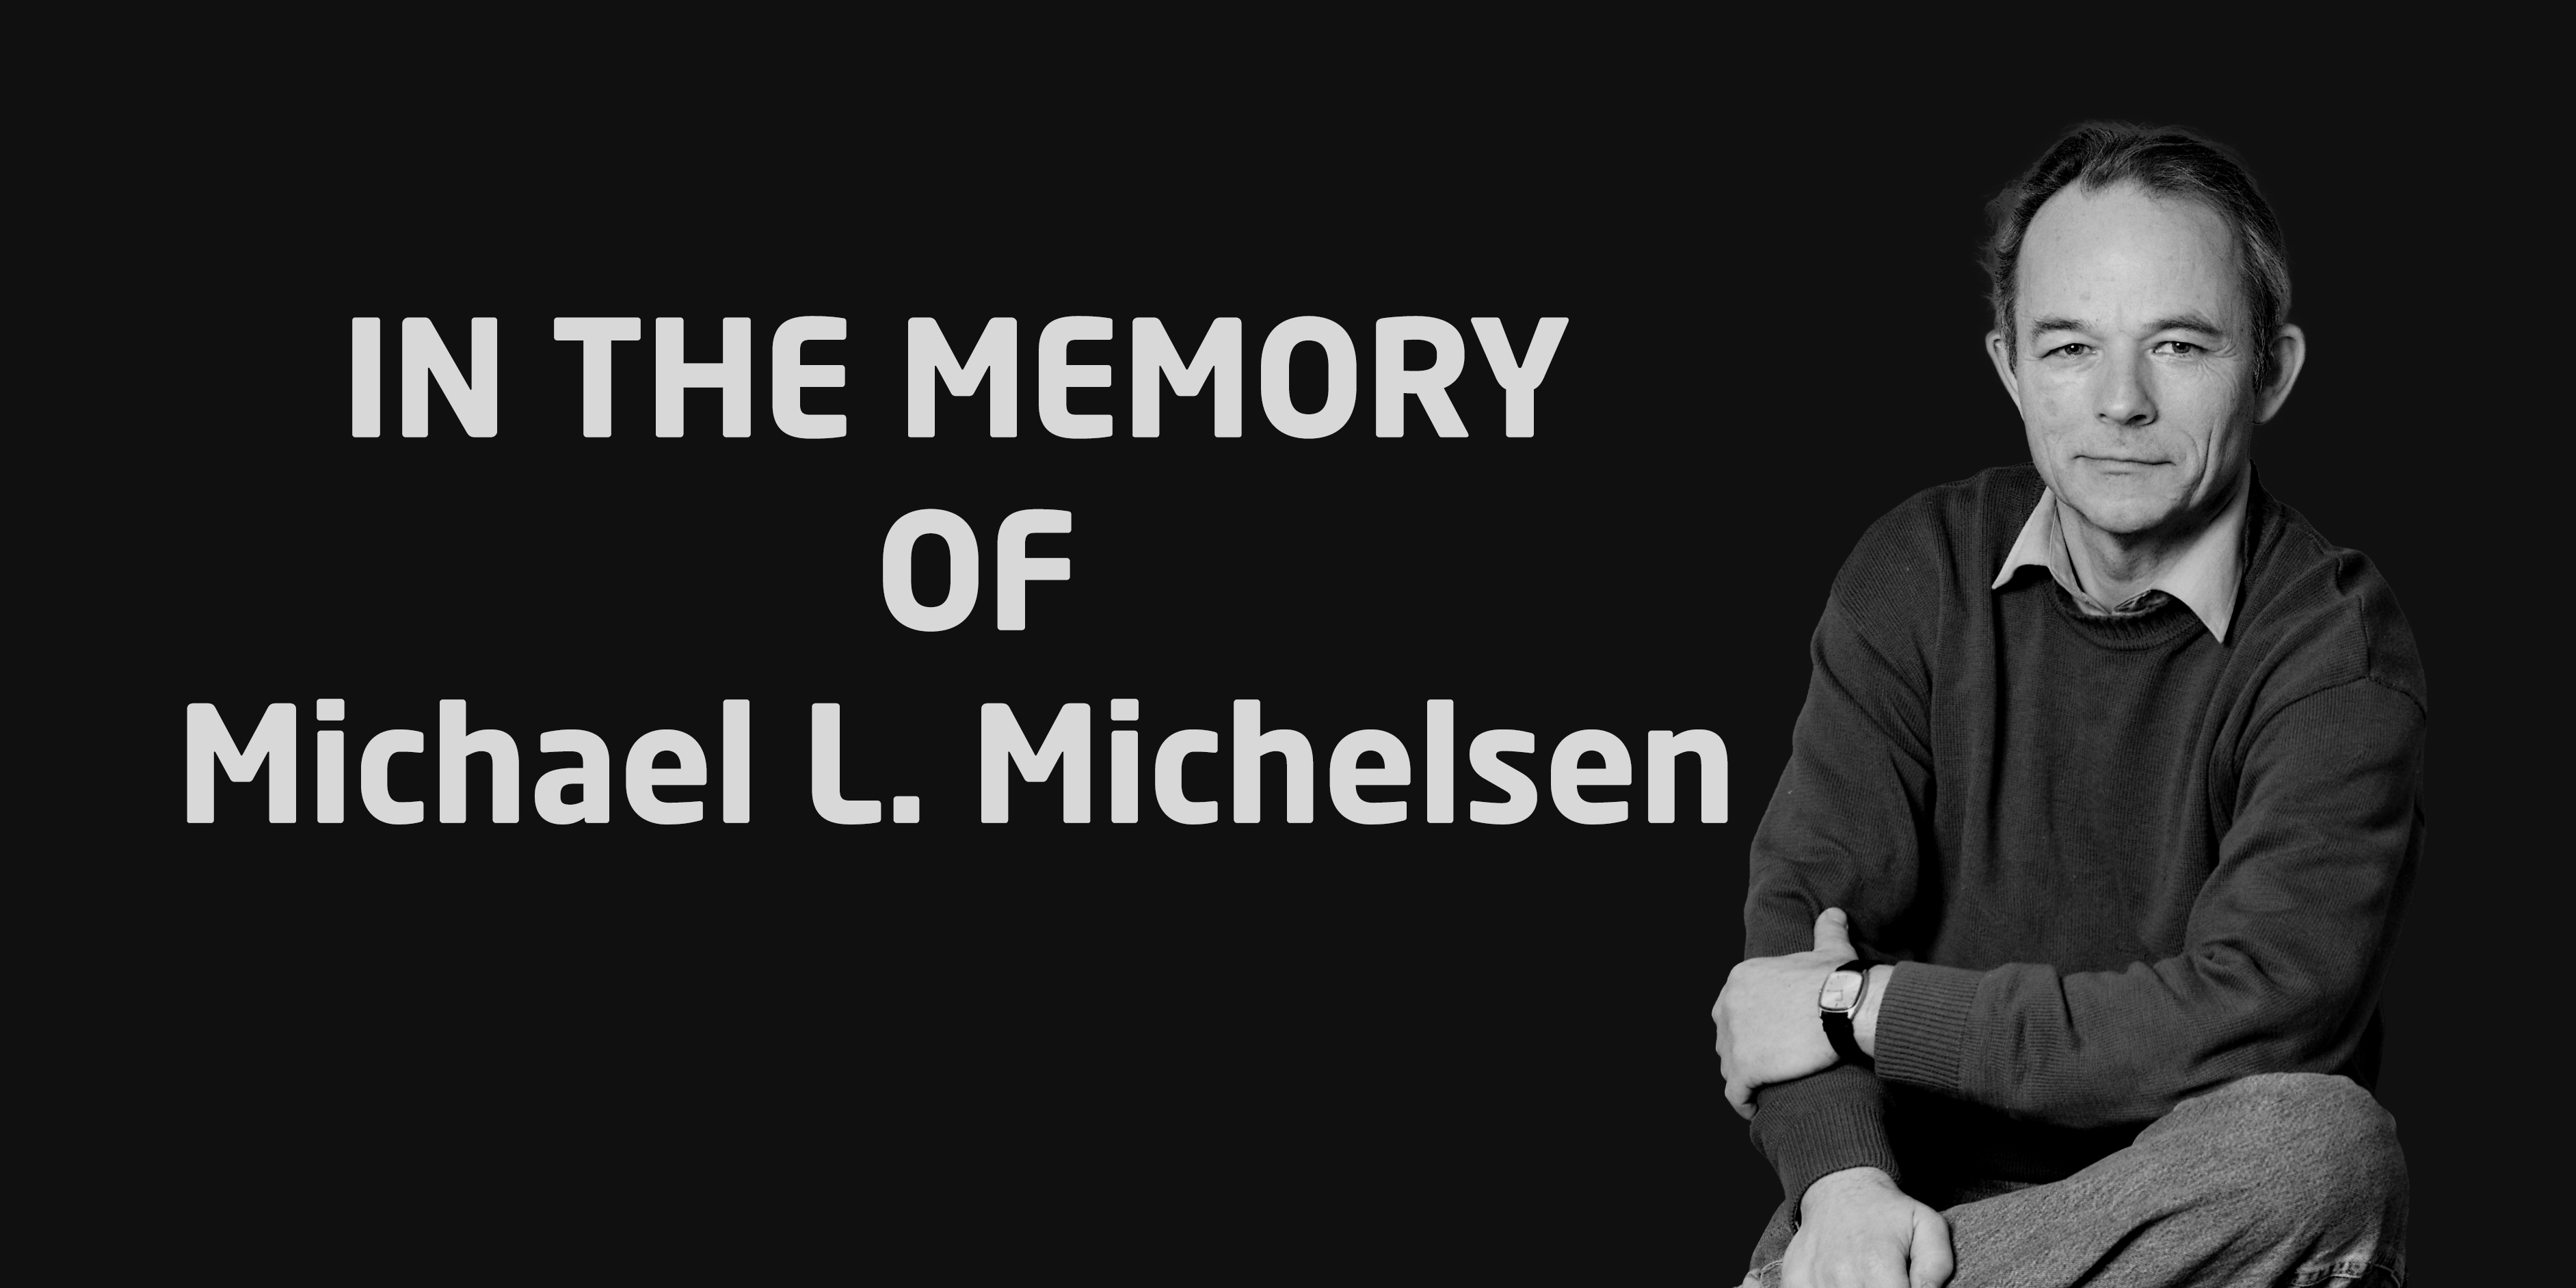 Michael L. Michelsen